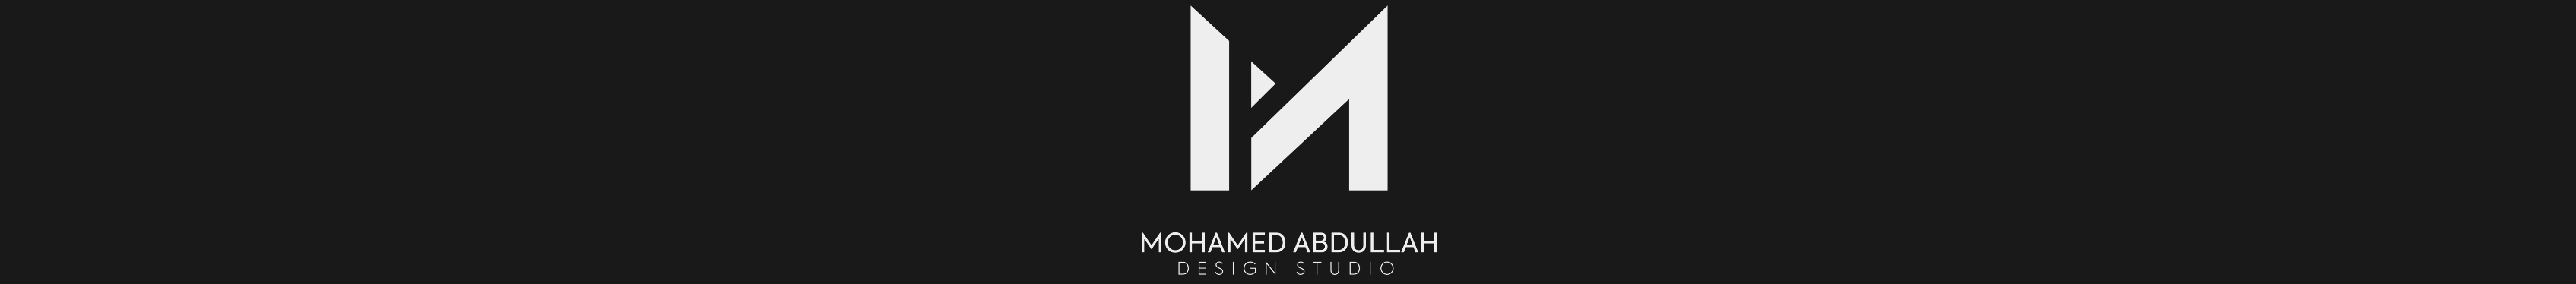 Баннер профиля Muhammed Abdallah